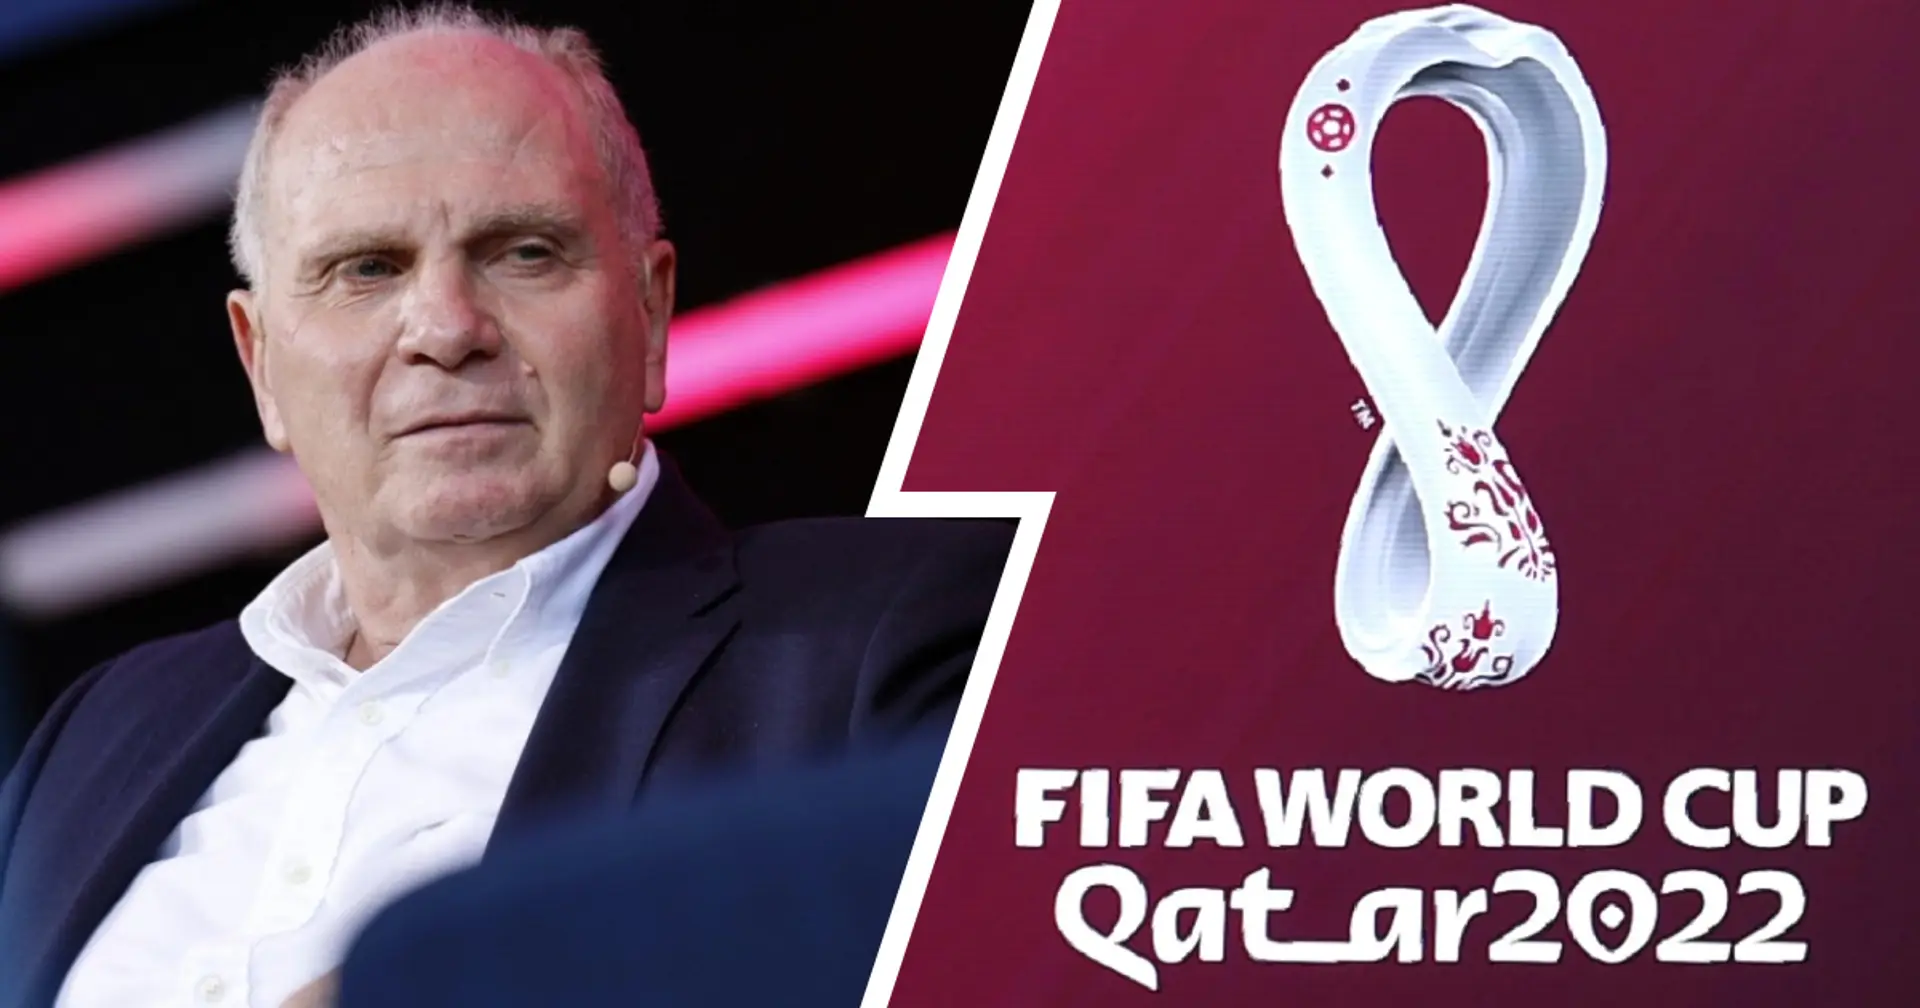 Hoeneß verteidigt erneut die Katar-WM: "Es geht hier um ein wunderschönes Fußball-Ereignis"